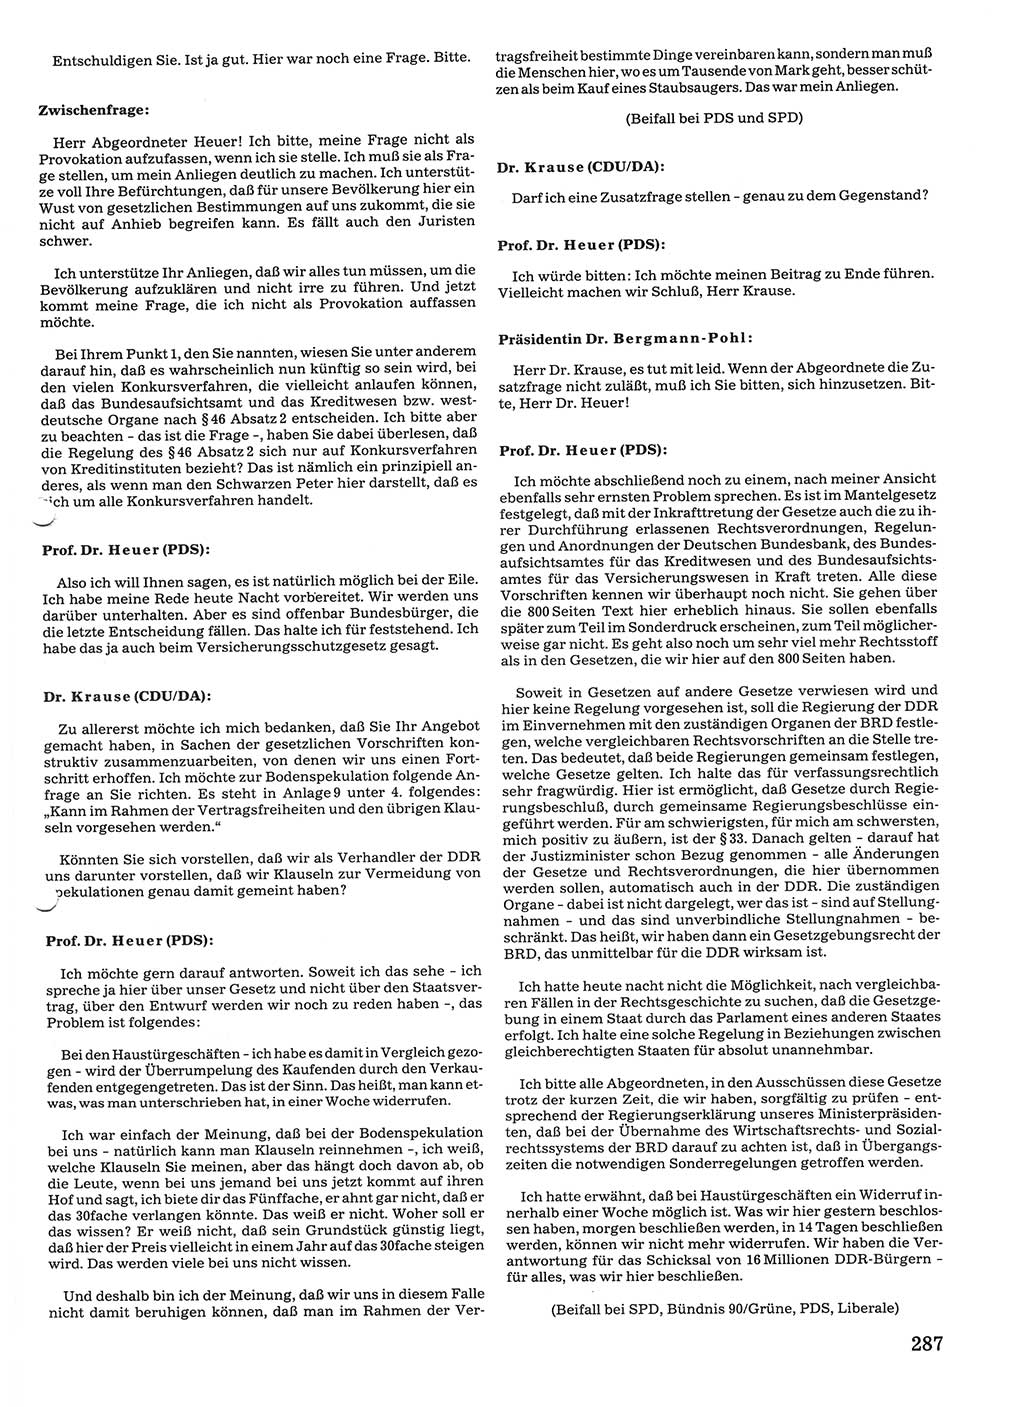 Tagungen der Volkskammer (VK) der Deutschen Demokratischen Republik (DDR), 10. Wahlperiode 1990, Seite 287 (VK. DDR 10. WP. 1990, Prot. Tg. 1-38, 5.4.-2.10.1990, S. 287)